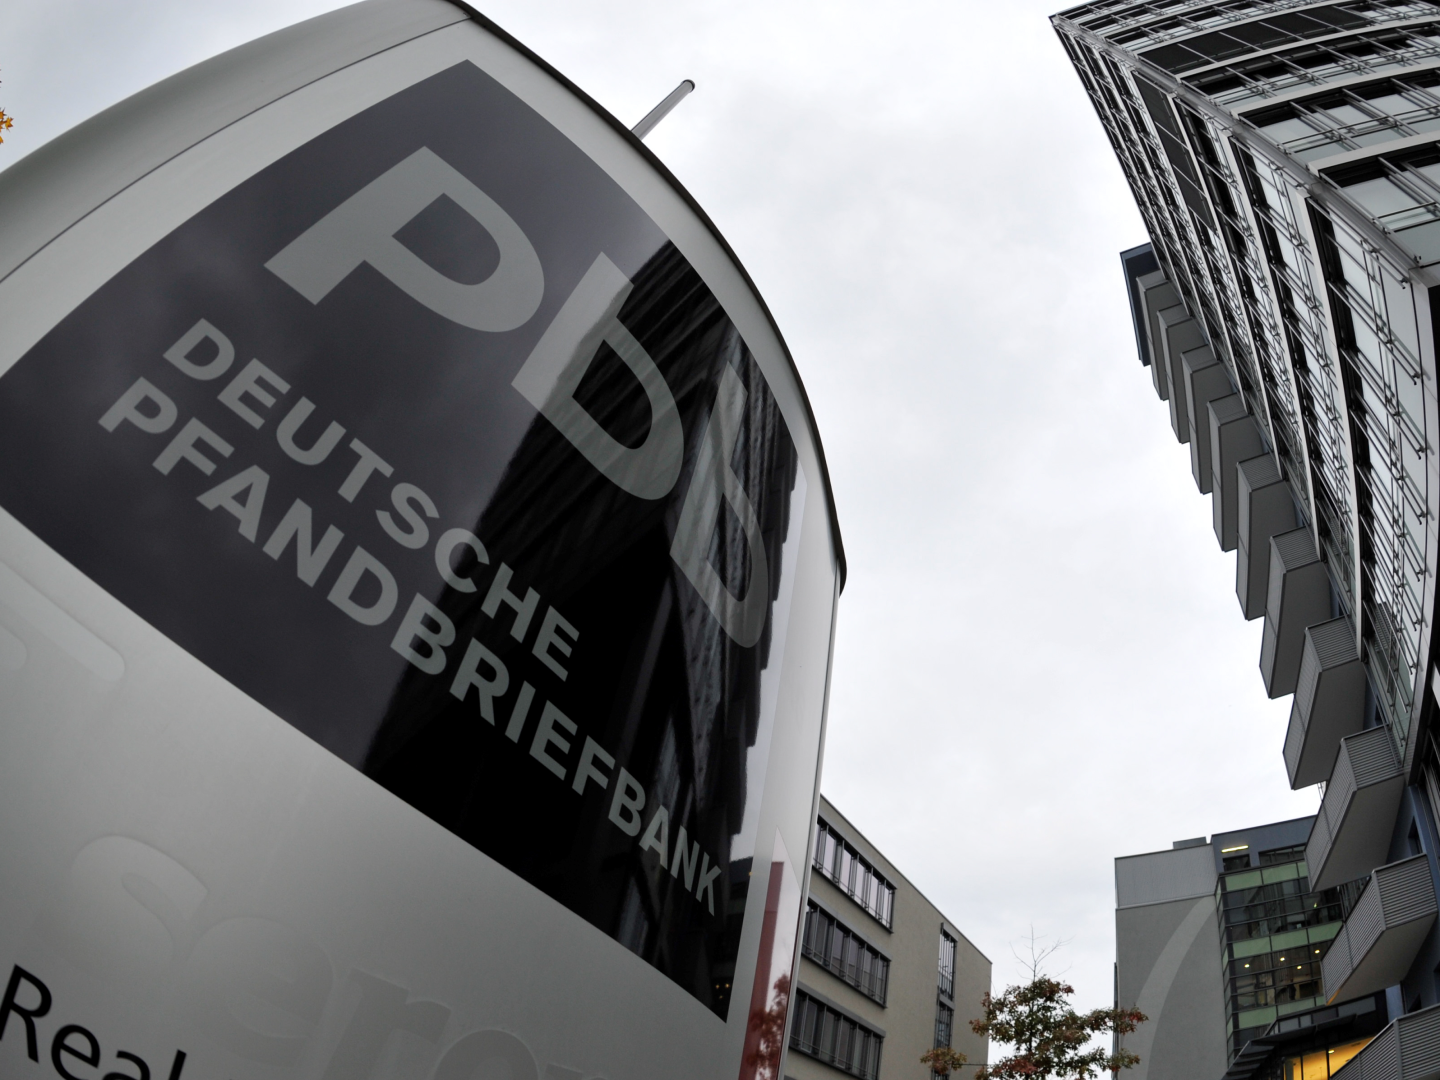 Die Deutsche Pfandbriefbank in Unterschleißheim bei München | Foto: picture alliance / dpa | Frank Leonhardt